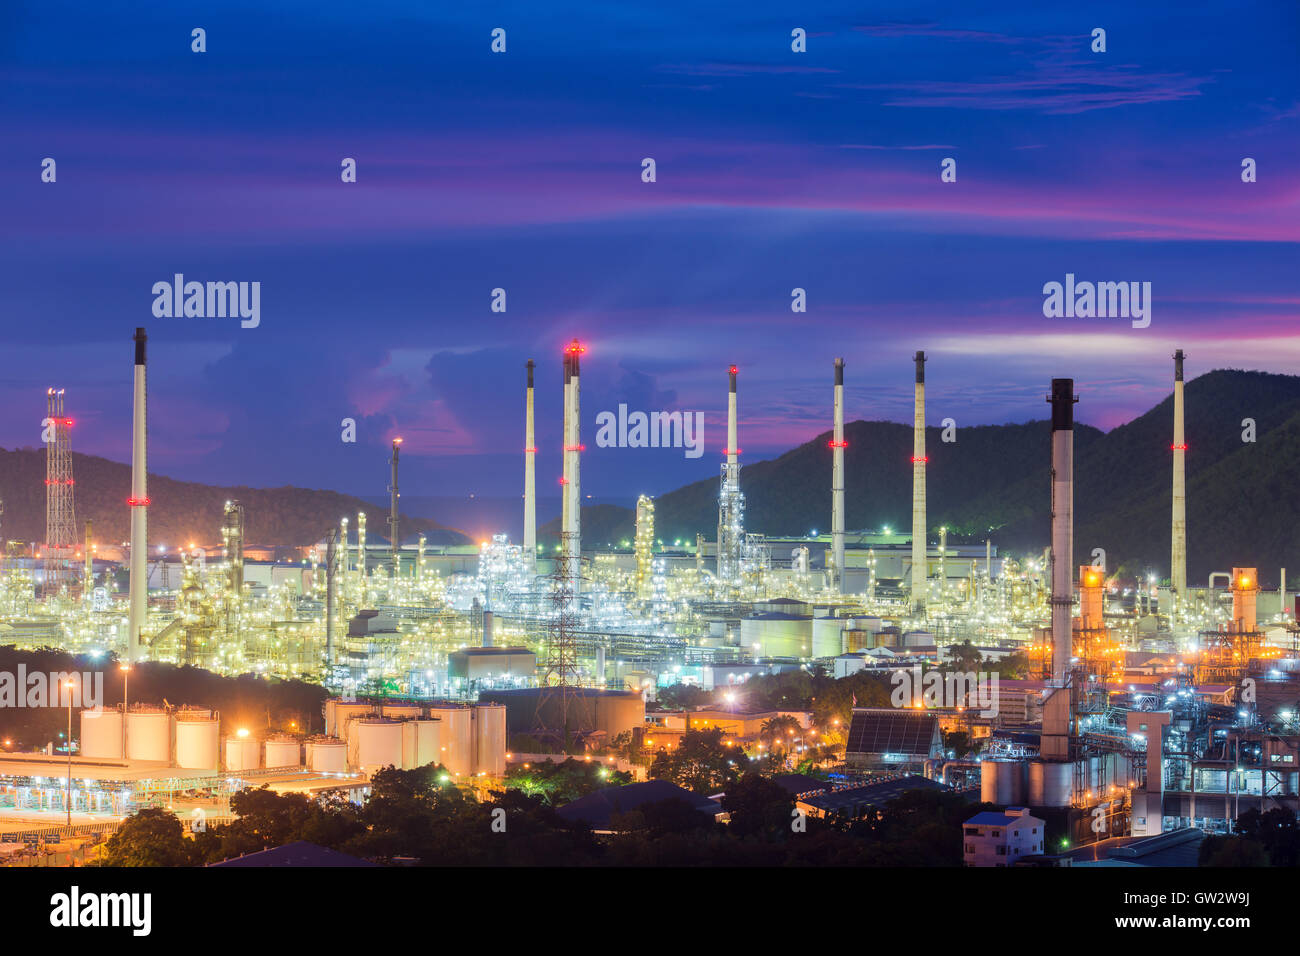 Paysage de l'industrie des raffineries de pétrole ou de l'industrie pétrolière avec réservoir de stockage d'huile Banque D'Images